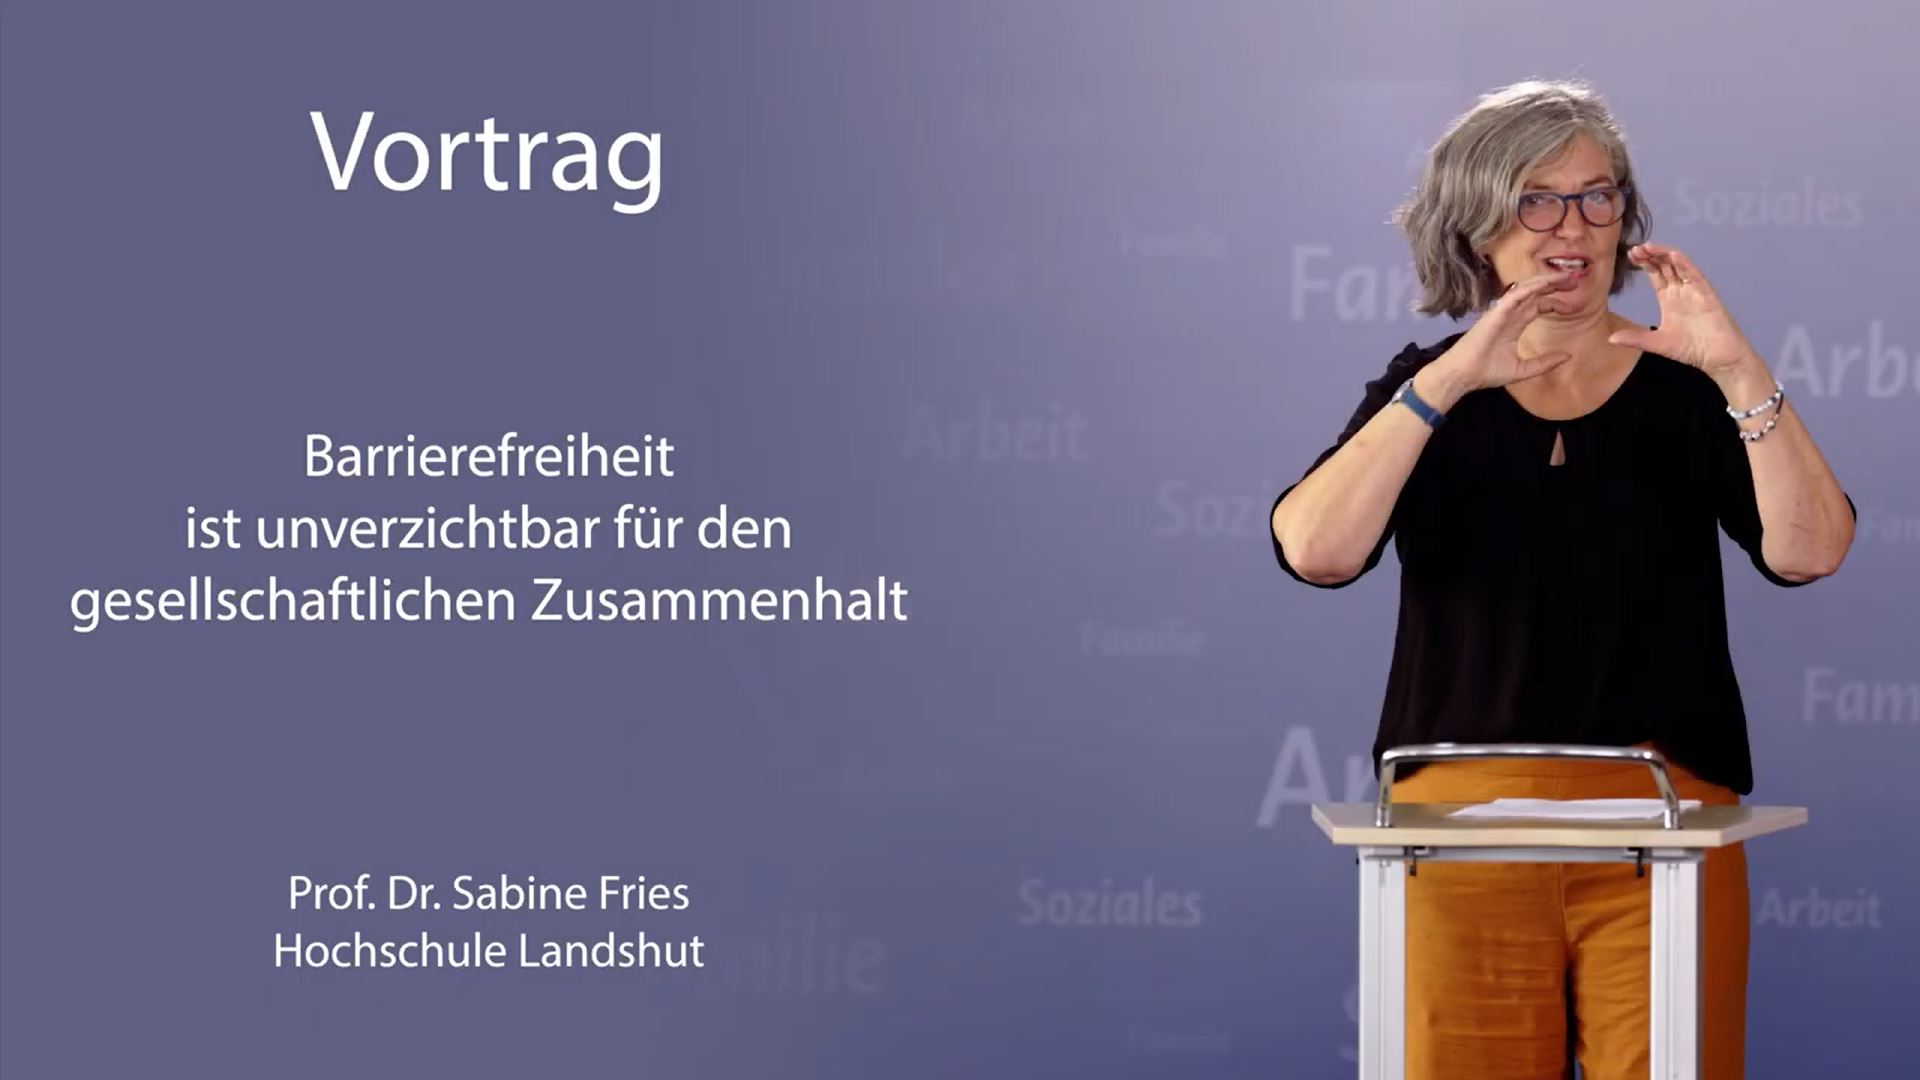 In diesem Video spricht die gehörlose Professorin Sabine Fries über die Bedeutung der Barrierefreiheit für den gesellschaftlichen Zusammenhalt.